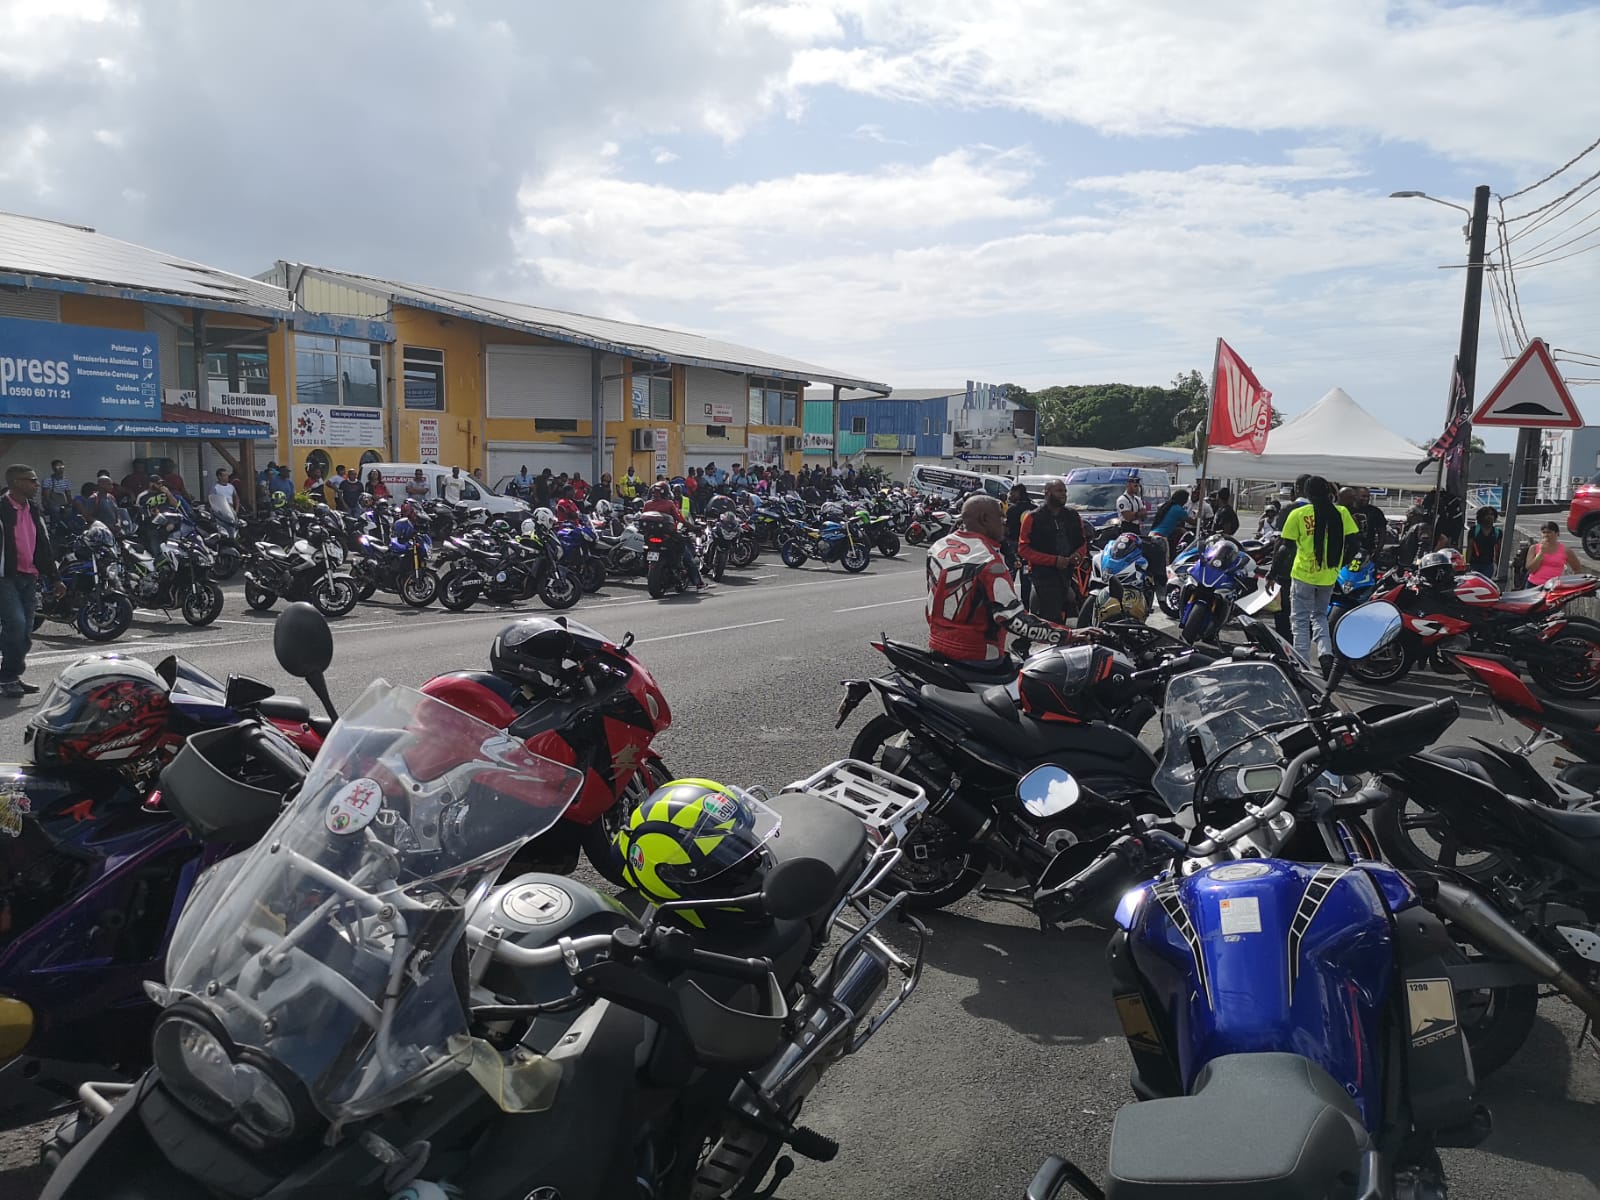     "Partager la route c'est possible" selon les motards de Guadeloupe

